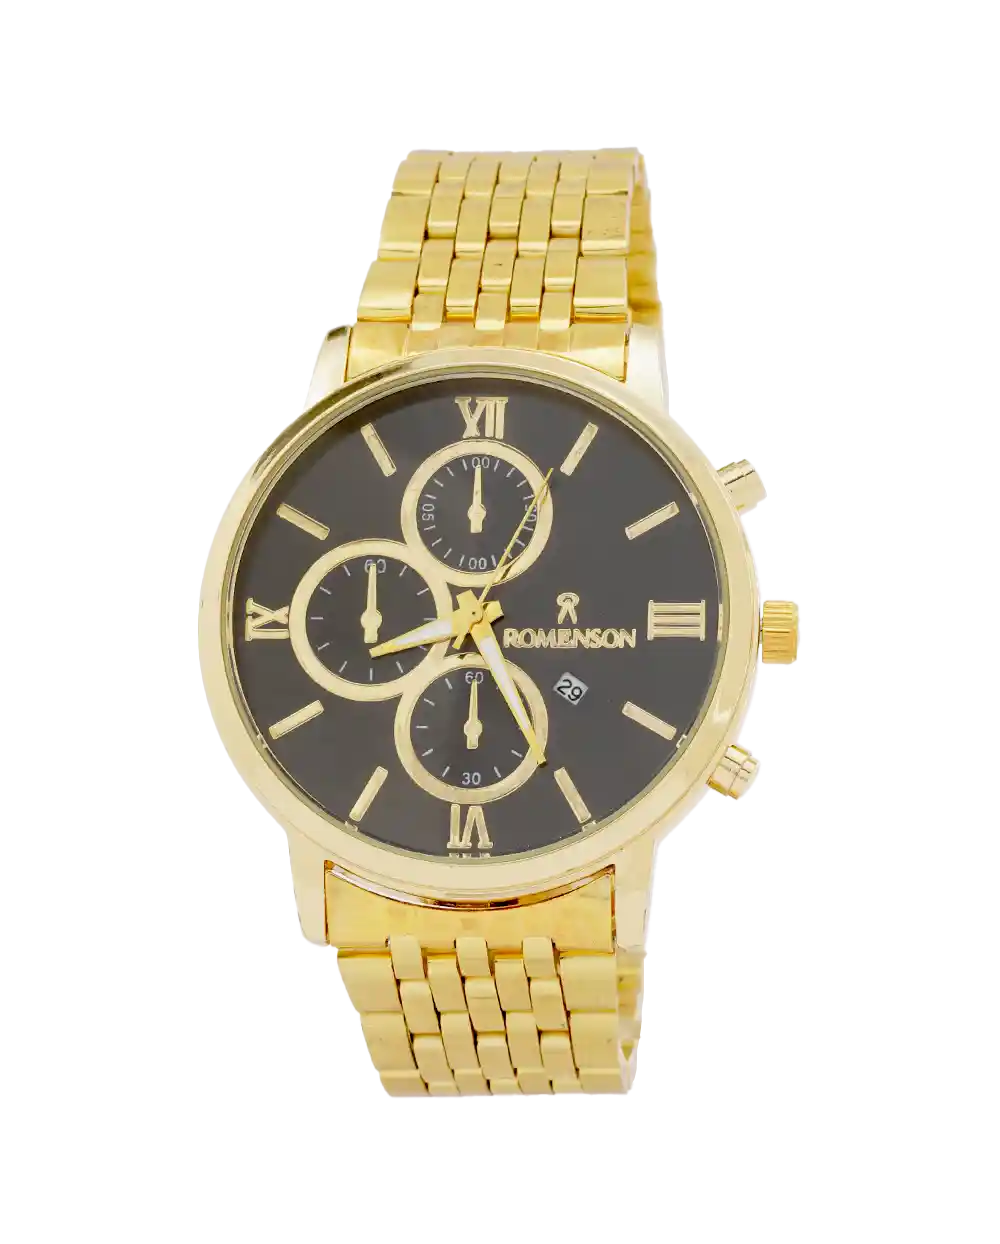 خرید ساعت مچی مردانه رومانسون ROMANSON مدل 1982 بند استیل طلایی رنگ ثابت و صفحه مشکی بهترین قیمت به همراه ارسال رایگان و جعبه